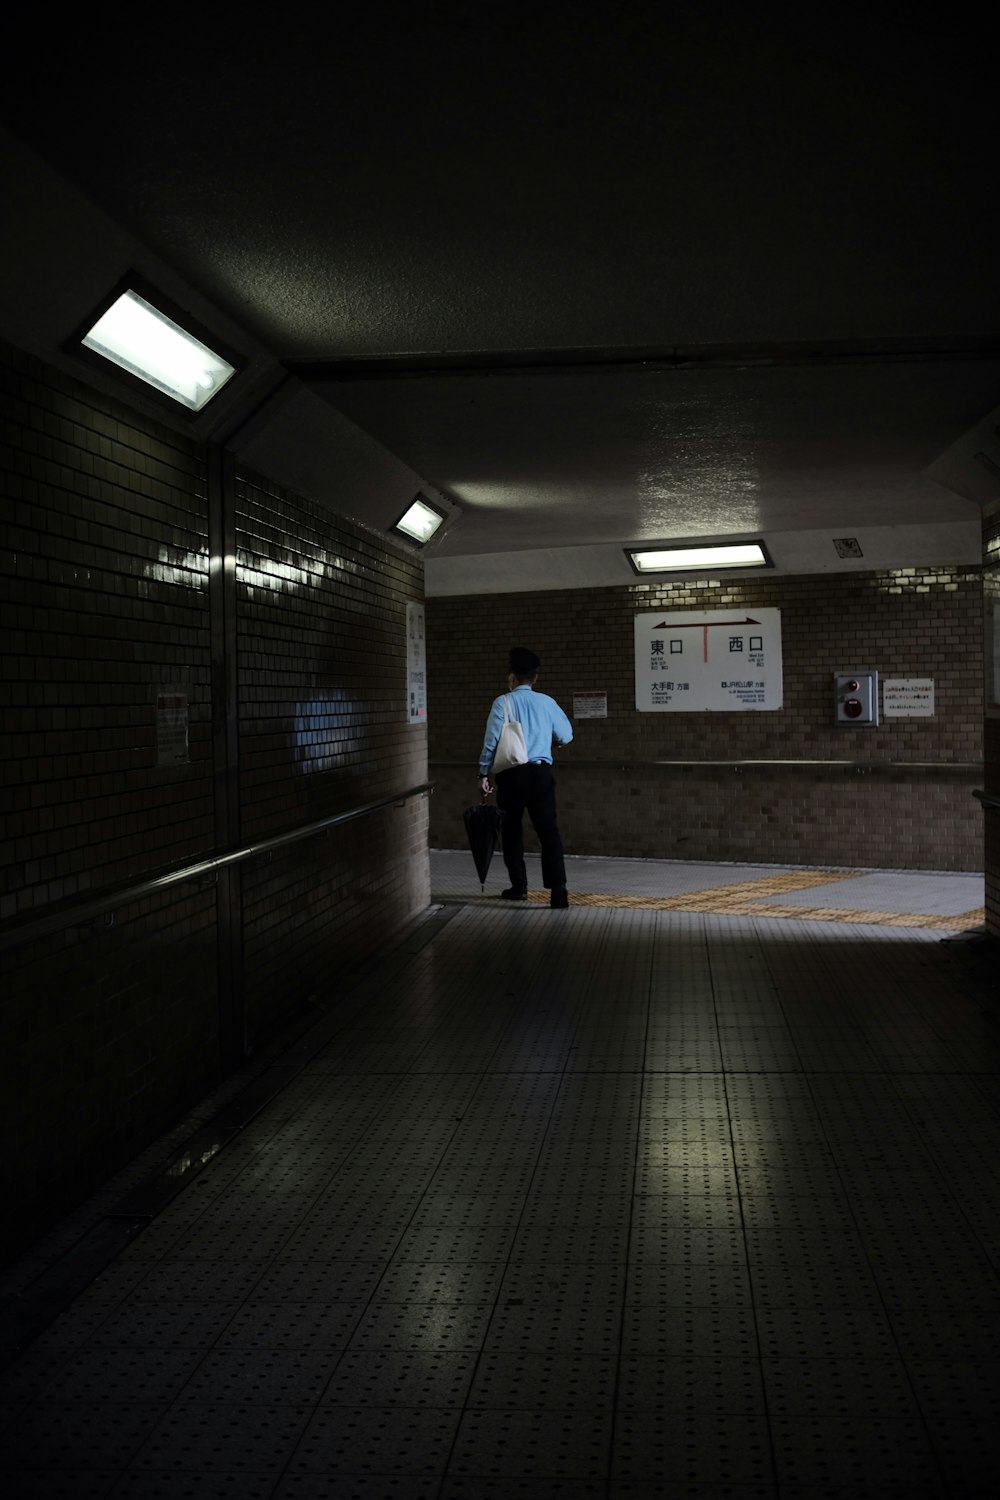 a man in a blue shirt is walking down a dark hallway